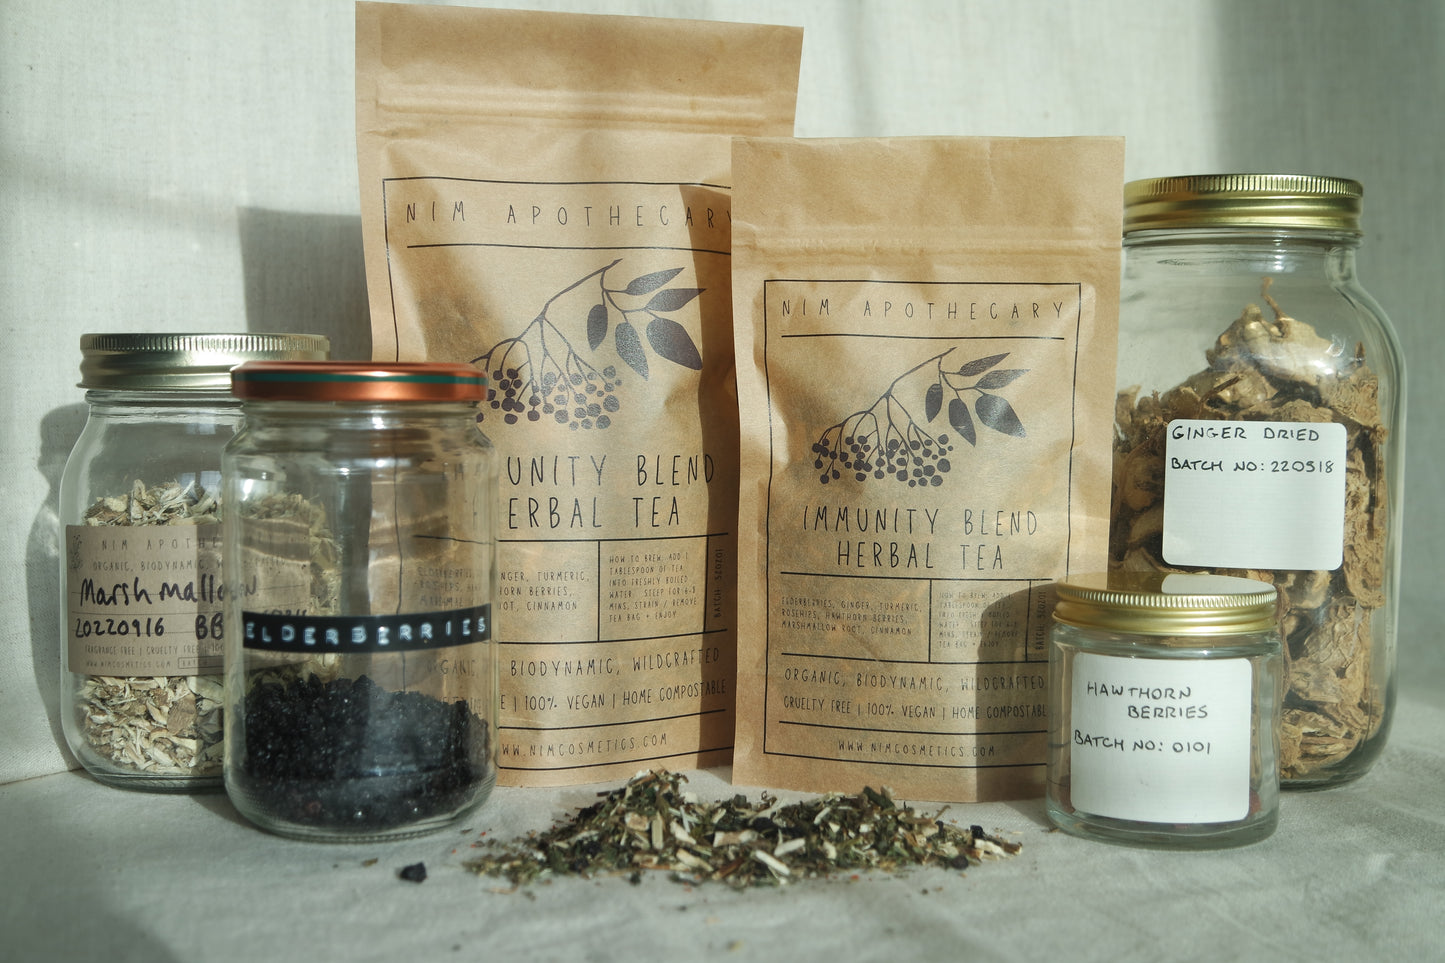 organic immunity blend herbal tea